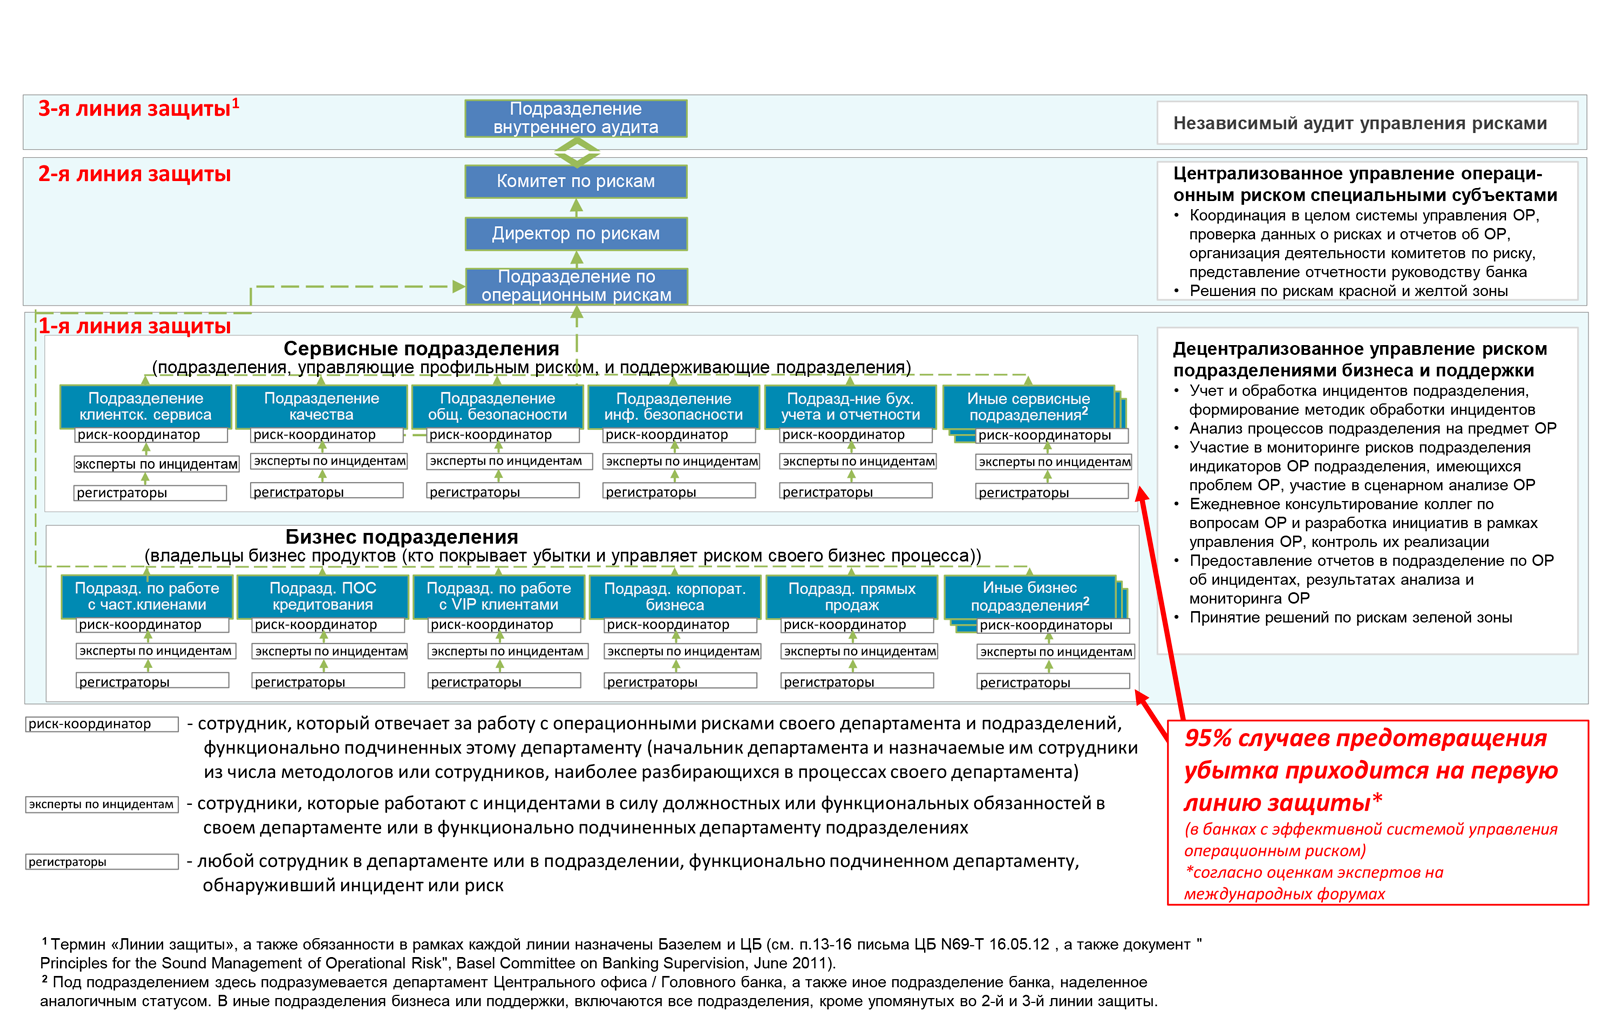 Схема 2 Схема субъектов управляющих операционными рисками банка и их задач - фото 3